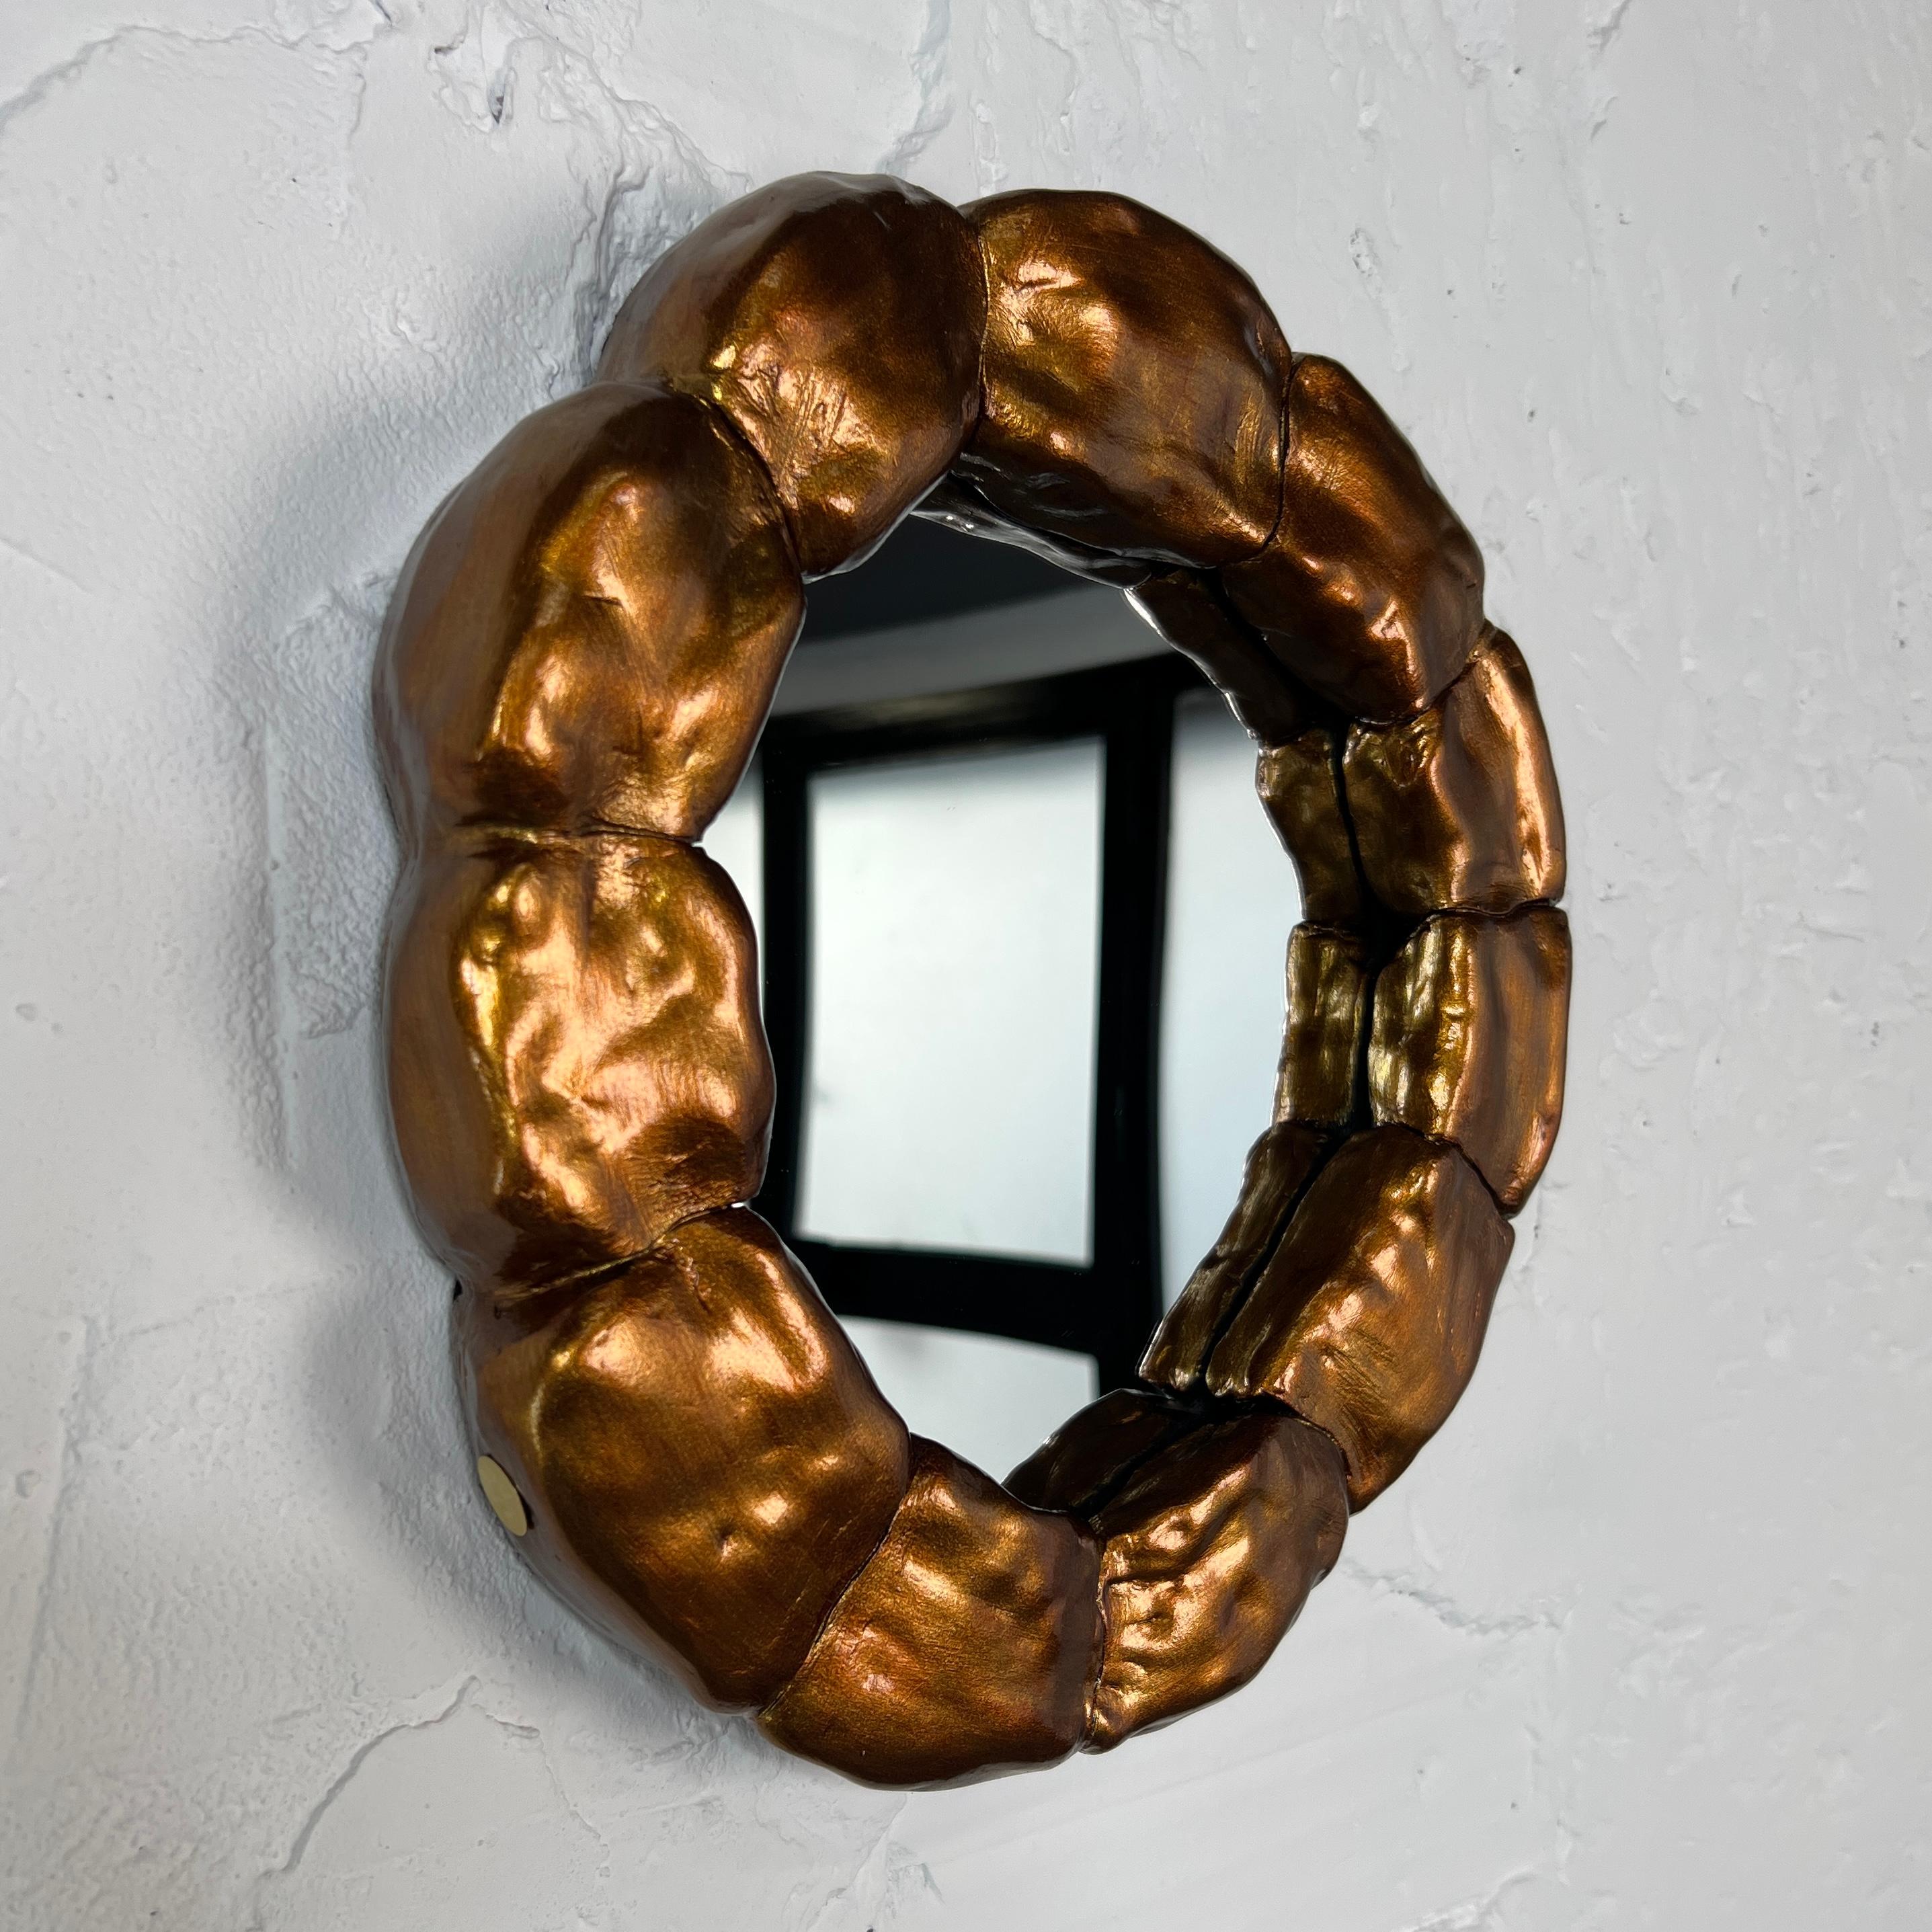 IRENA TONE Abstract Sculpture - "Bracelet" Mirror